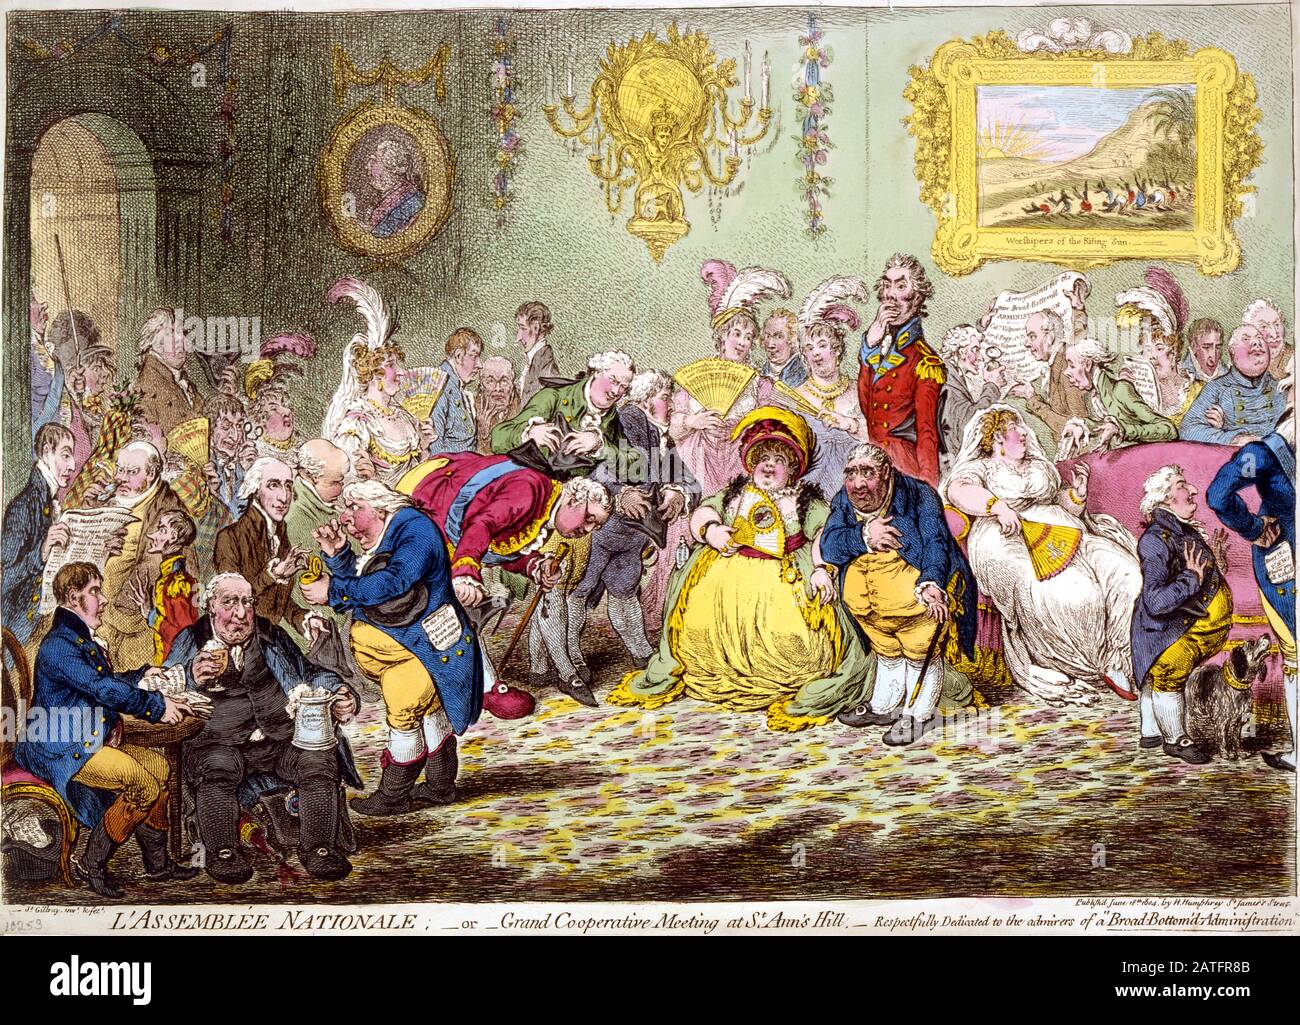 L'Assemblée Nationale (1804) von James Gillray. Print zeigt einen Empfang von Charles James Fox und seiner Frau für verschiedene Gruppen und Freunde des Prince of Wales, die alle gegen die Regierung waren. Stockfoto